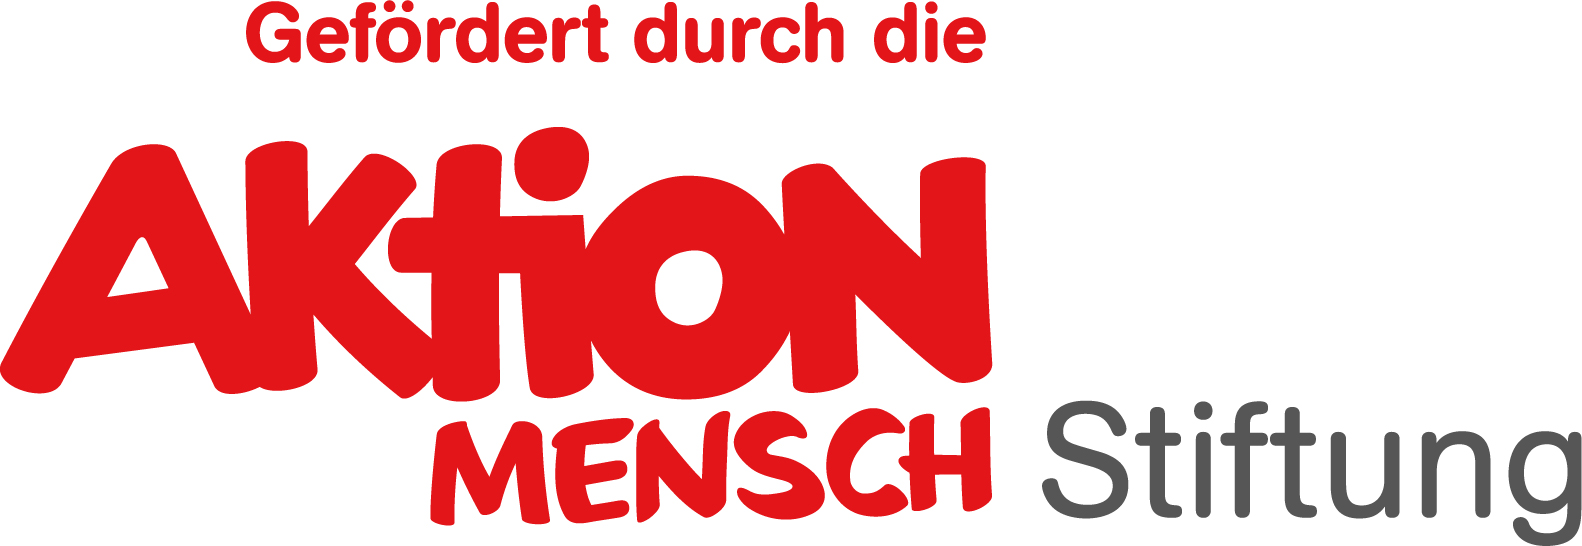 Logo gefördert durch die Aktion Mensch Stiftung